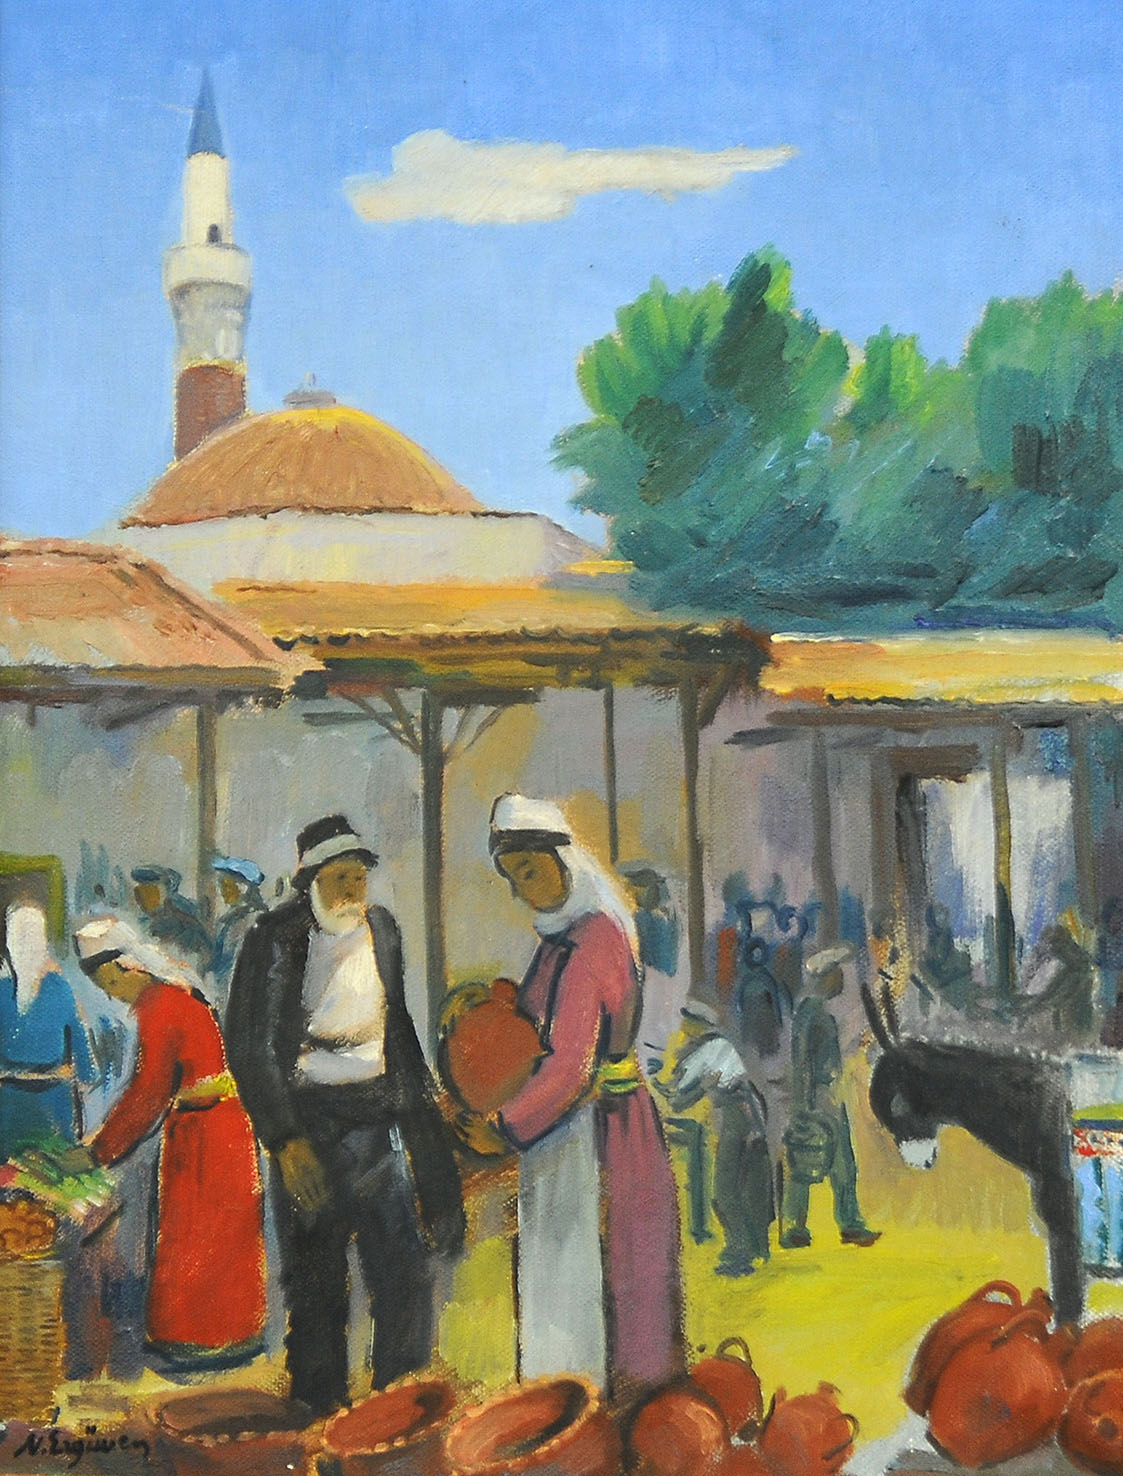 Bergama, Tuval üzerine yağlıboya- Oil on canvas, 35×27 cm